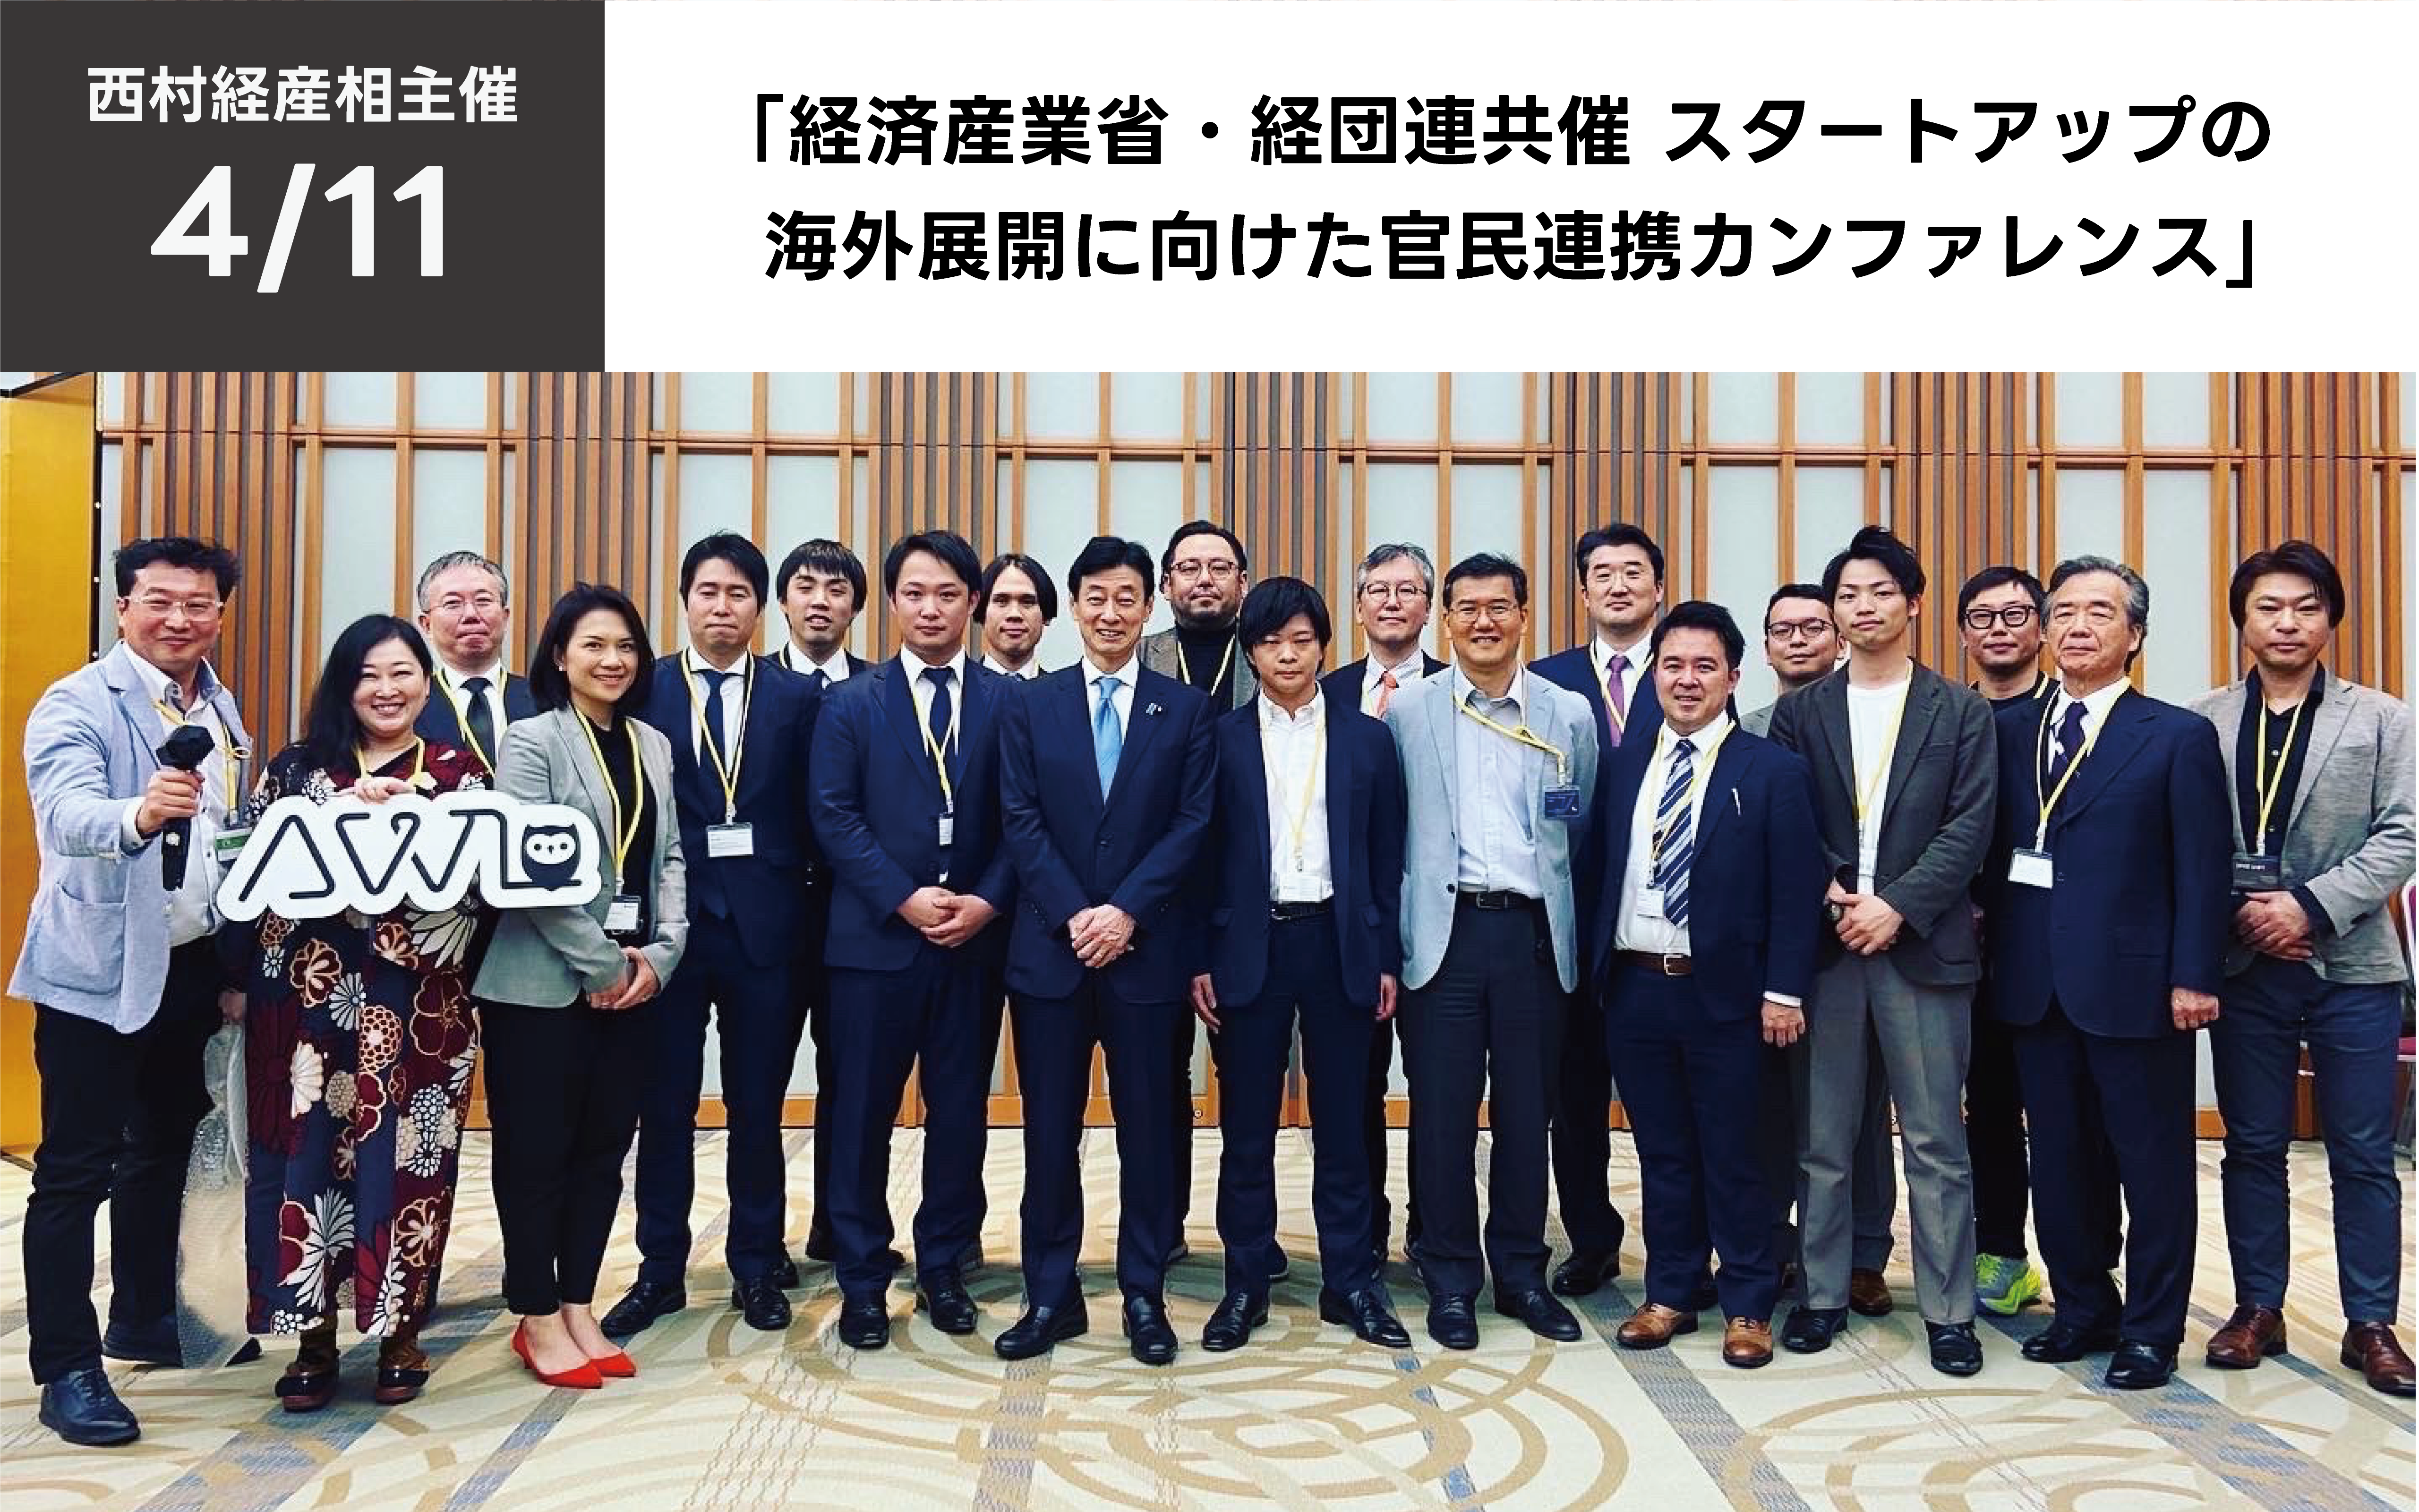 【西村経産相】弊社代表が、経済産業省・経団連共催の産学官イベントに参加いたしました。